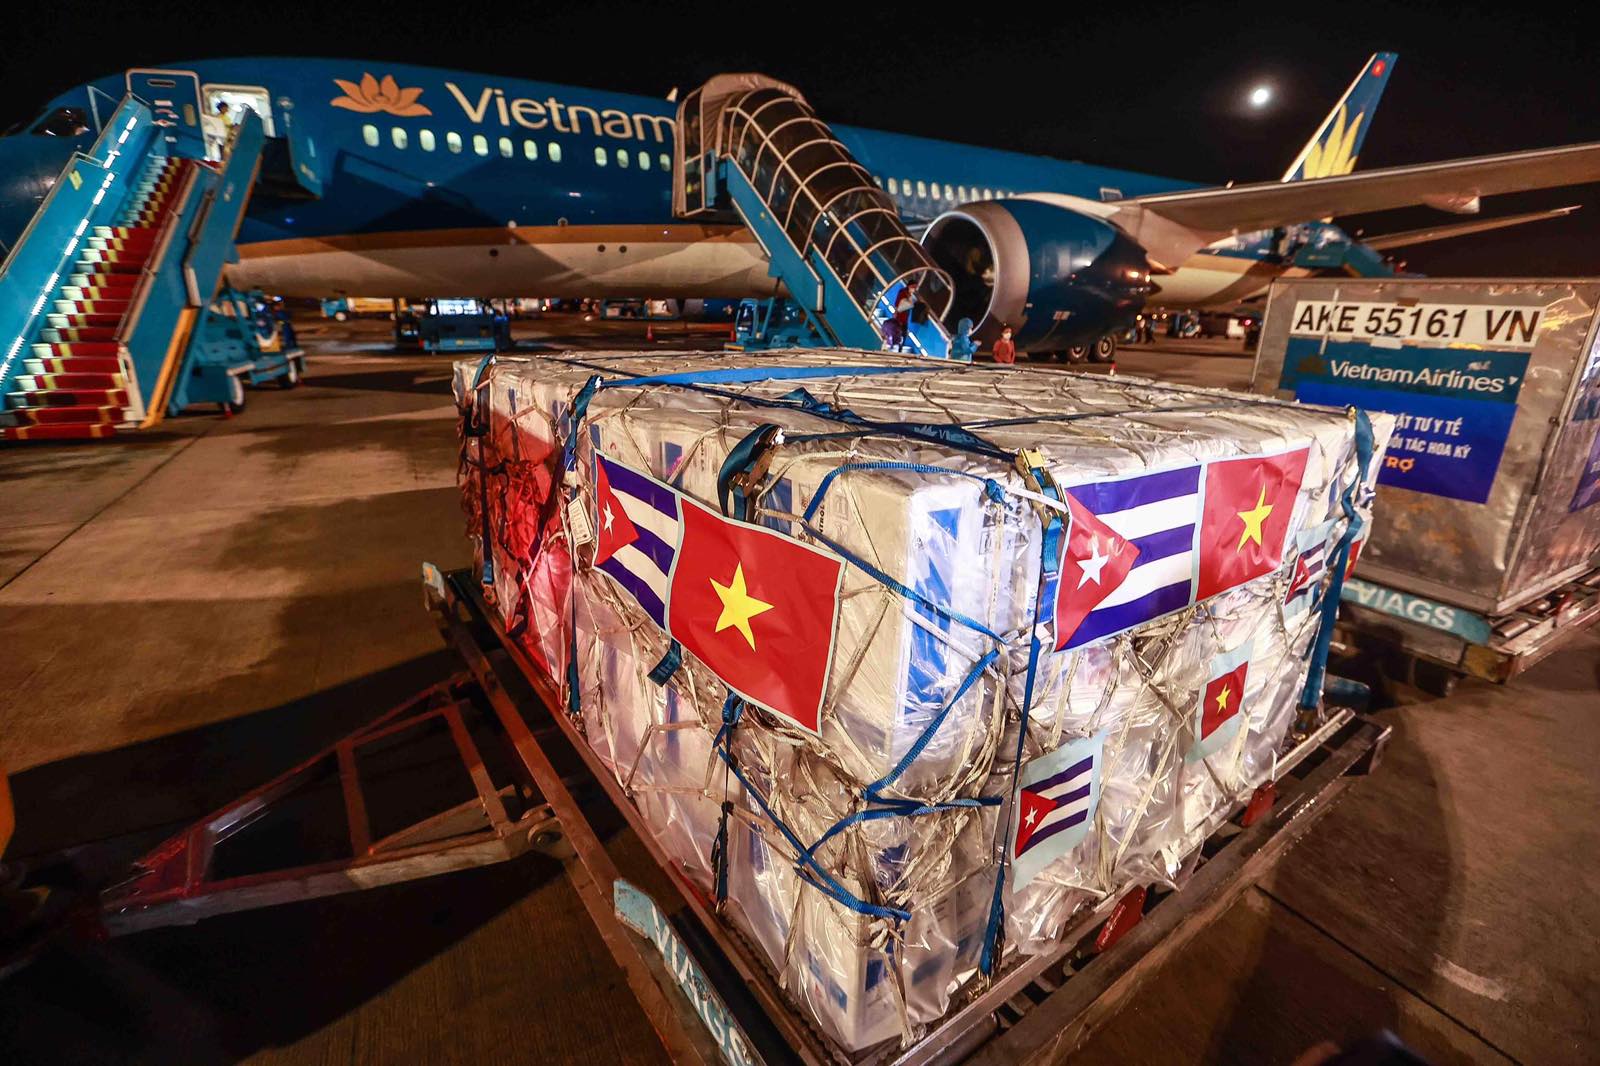 Đây là chuyến bay chở vắc xin có hành trình dài nhất mà Vietnam Airlines từng thực hiện, với tổng chiều dài từ Cuba qua Mỹ rồi về Việt Nam là hơn 17.000 km